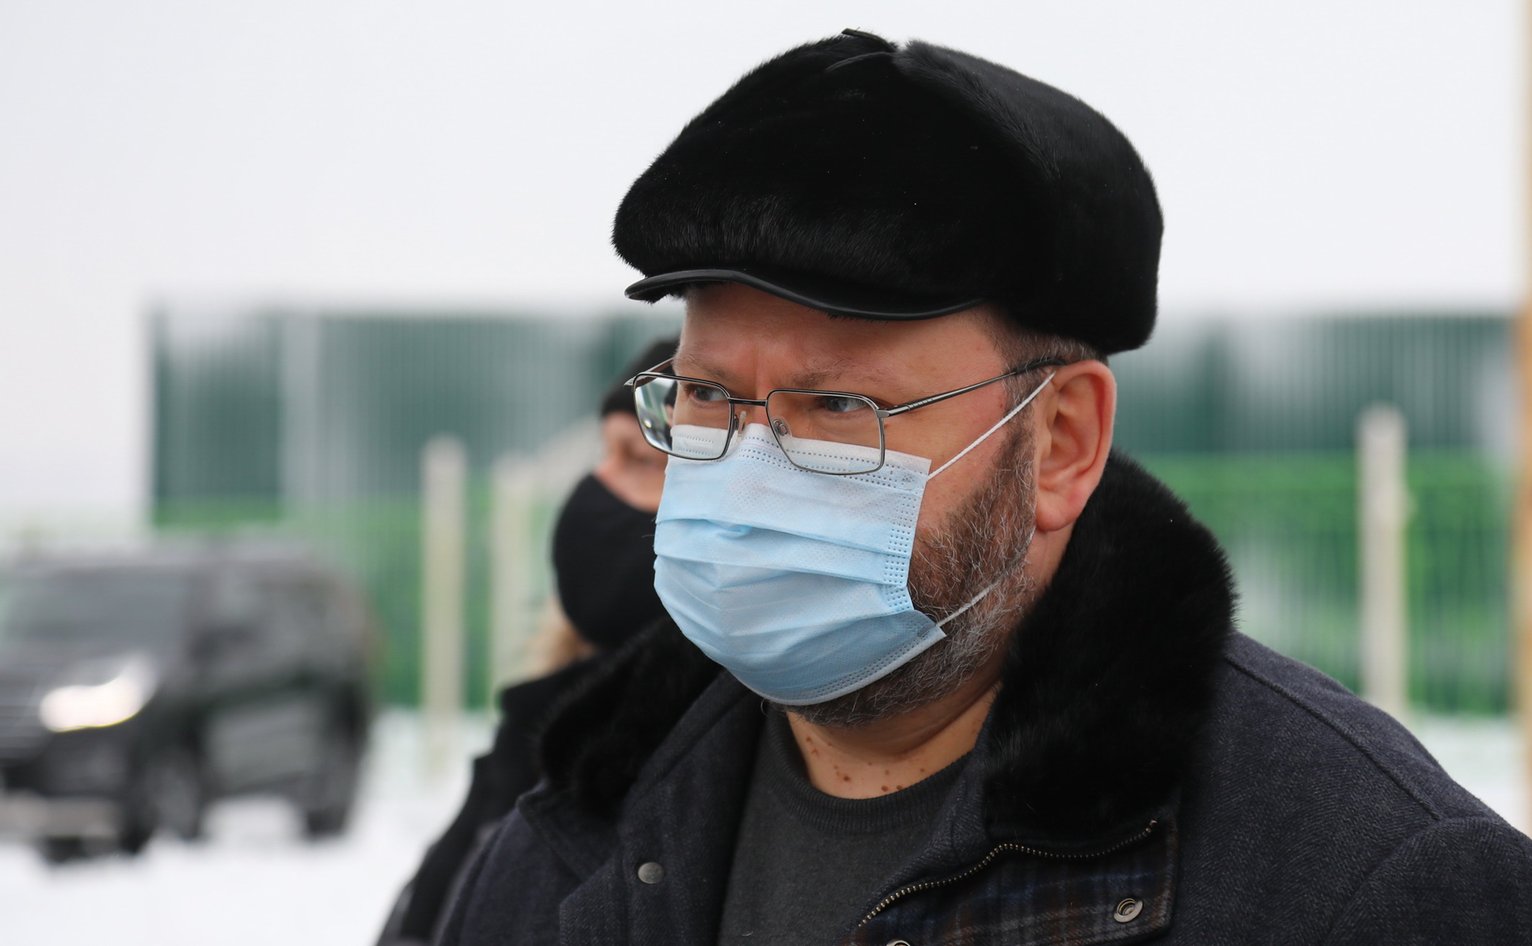 Губернатор Мельниченко не встречается с журналистами из-за коронавируса? (официальная версия)